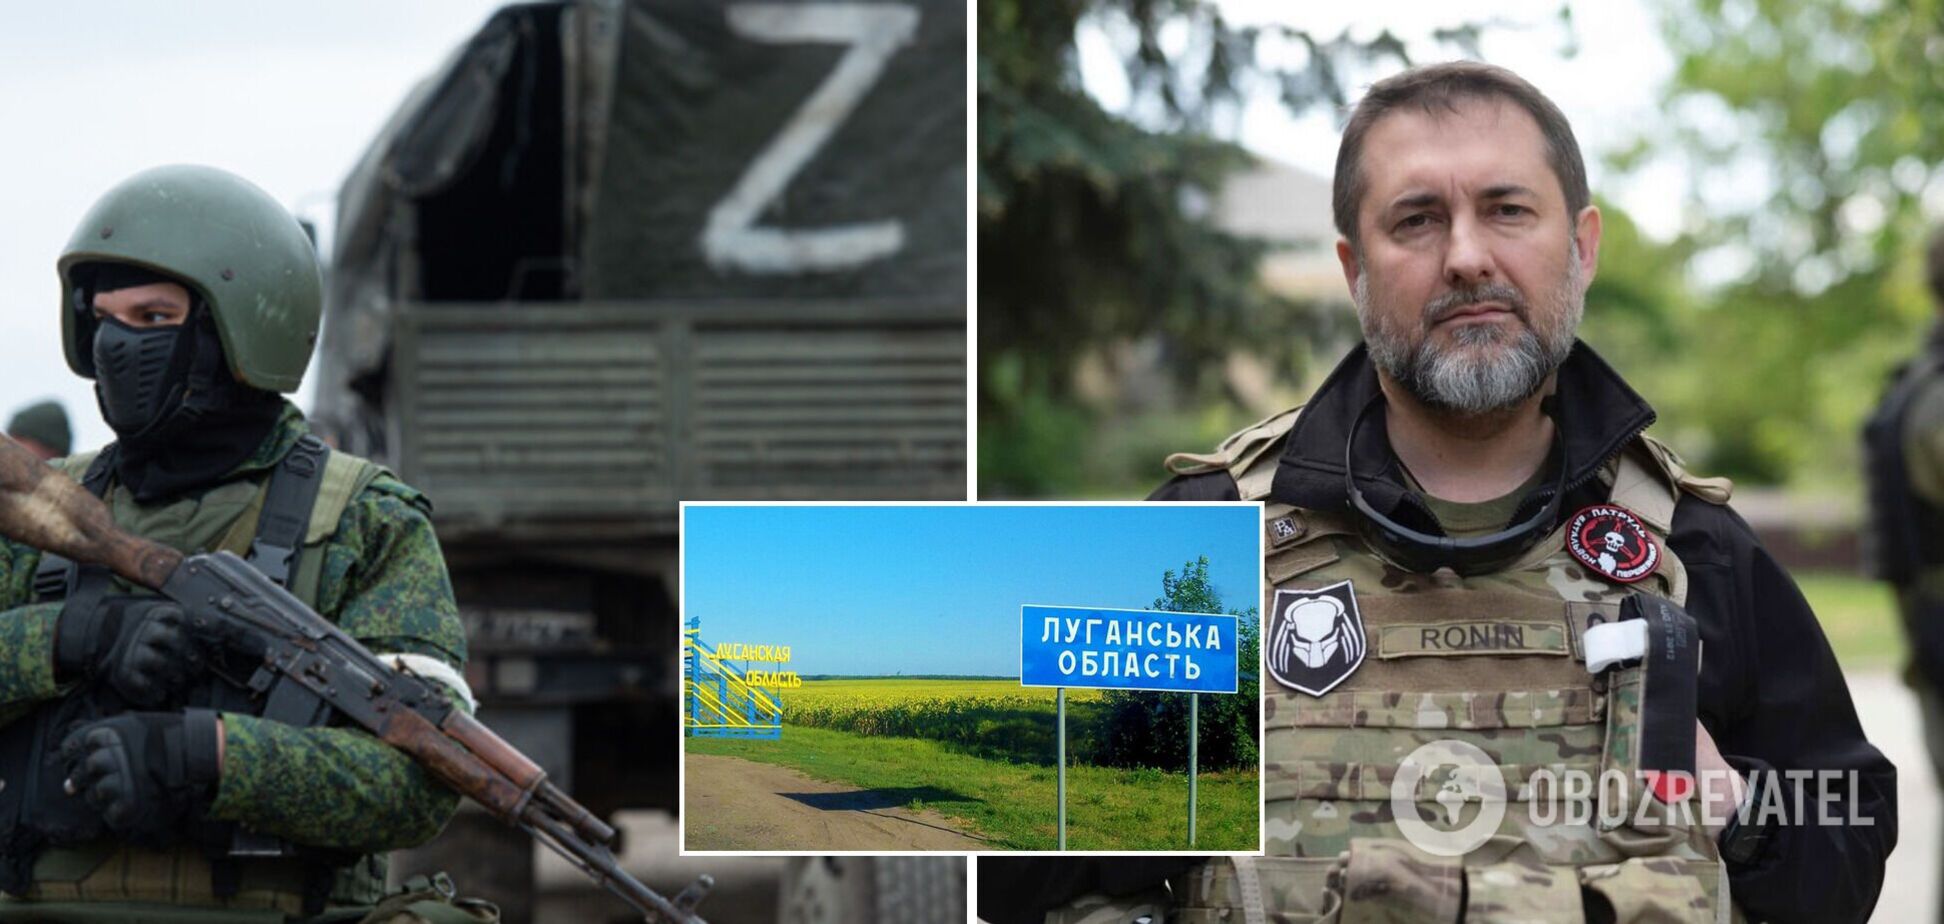 Гайдай: окупанти брешуть про повне захоплення Луганщини, намагаючись якомога швидше провести псевдореферендум